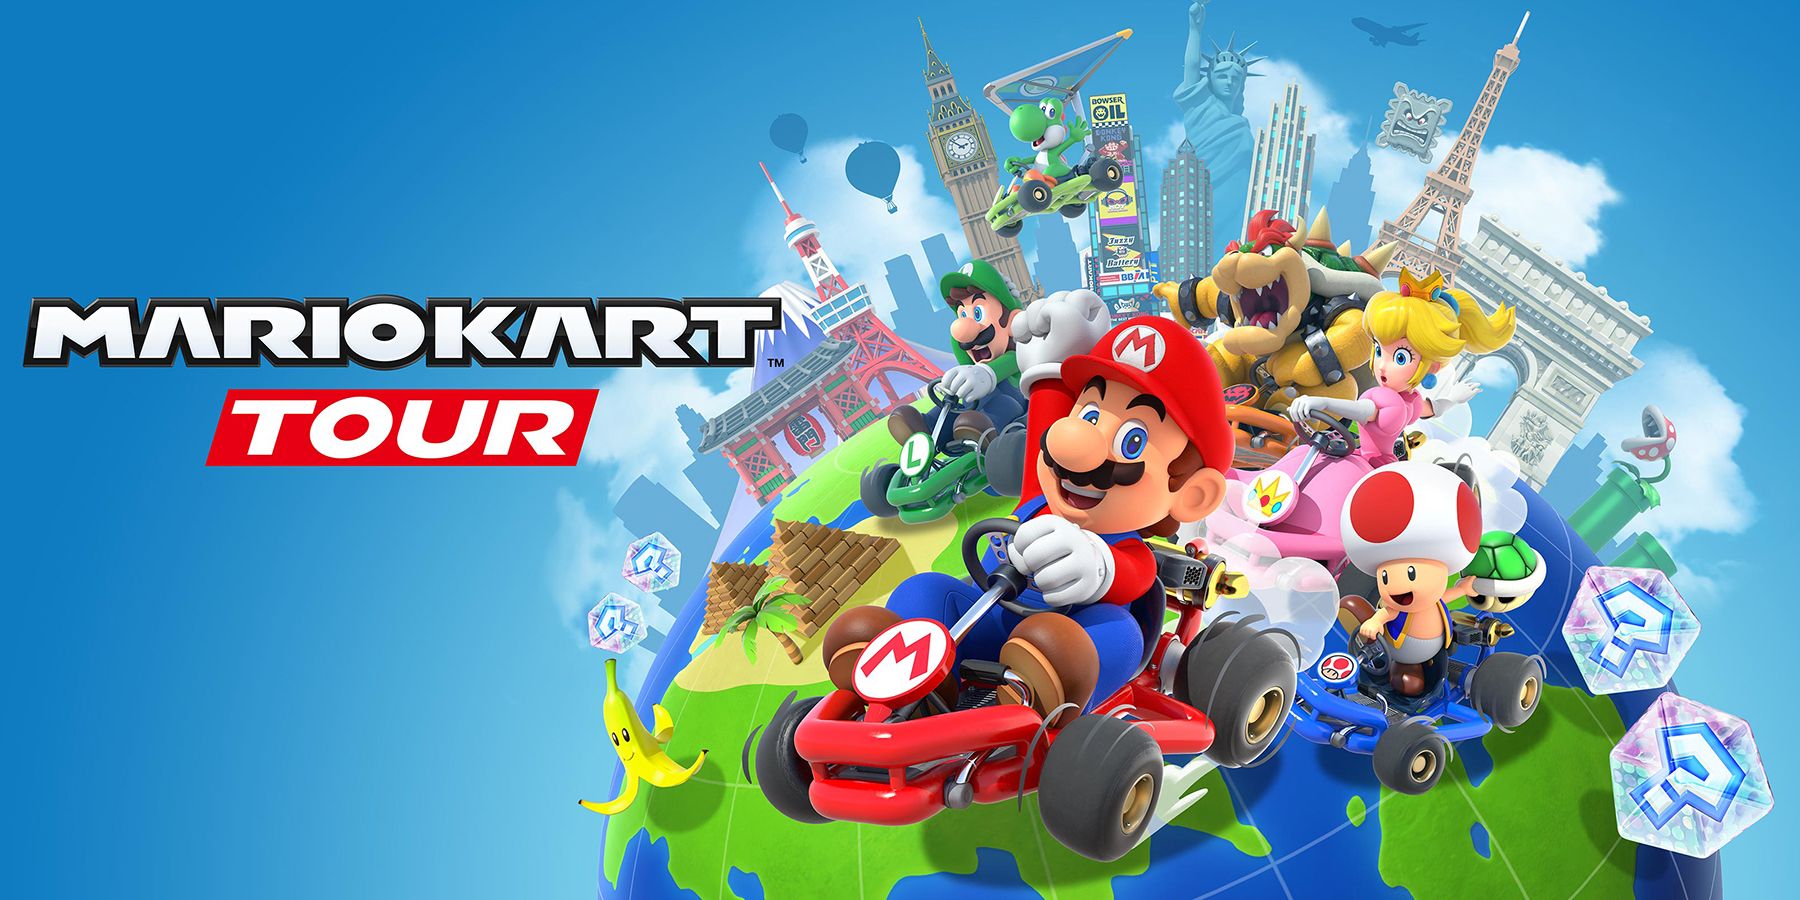 Mario Kart Tour mobile game